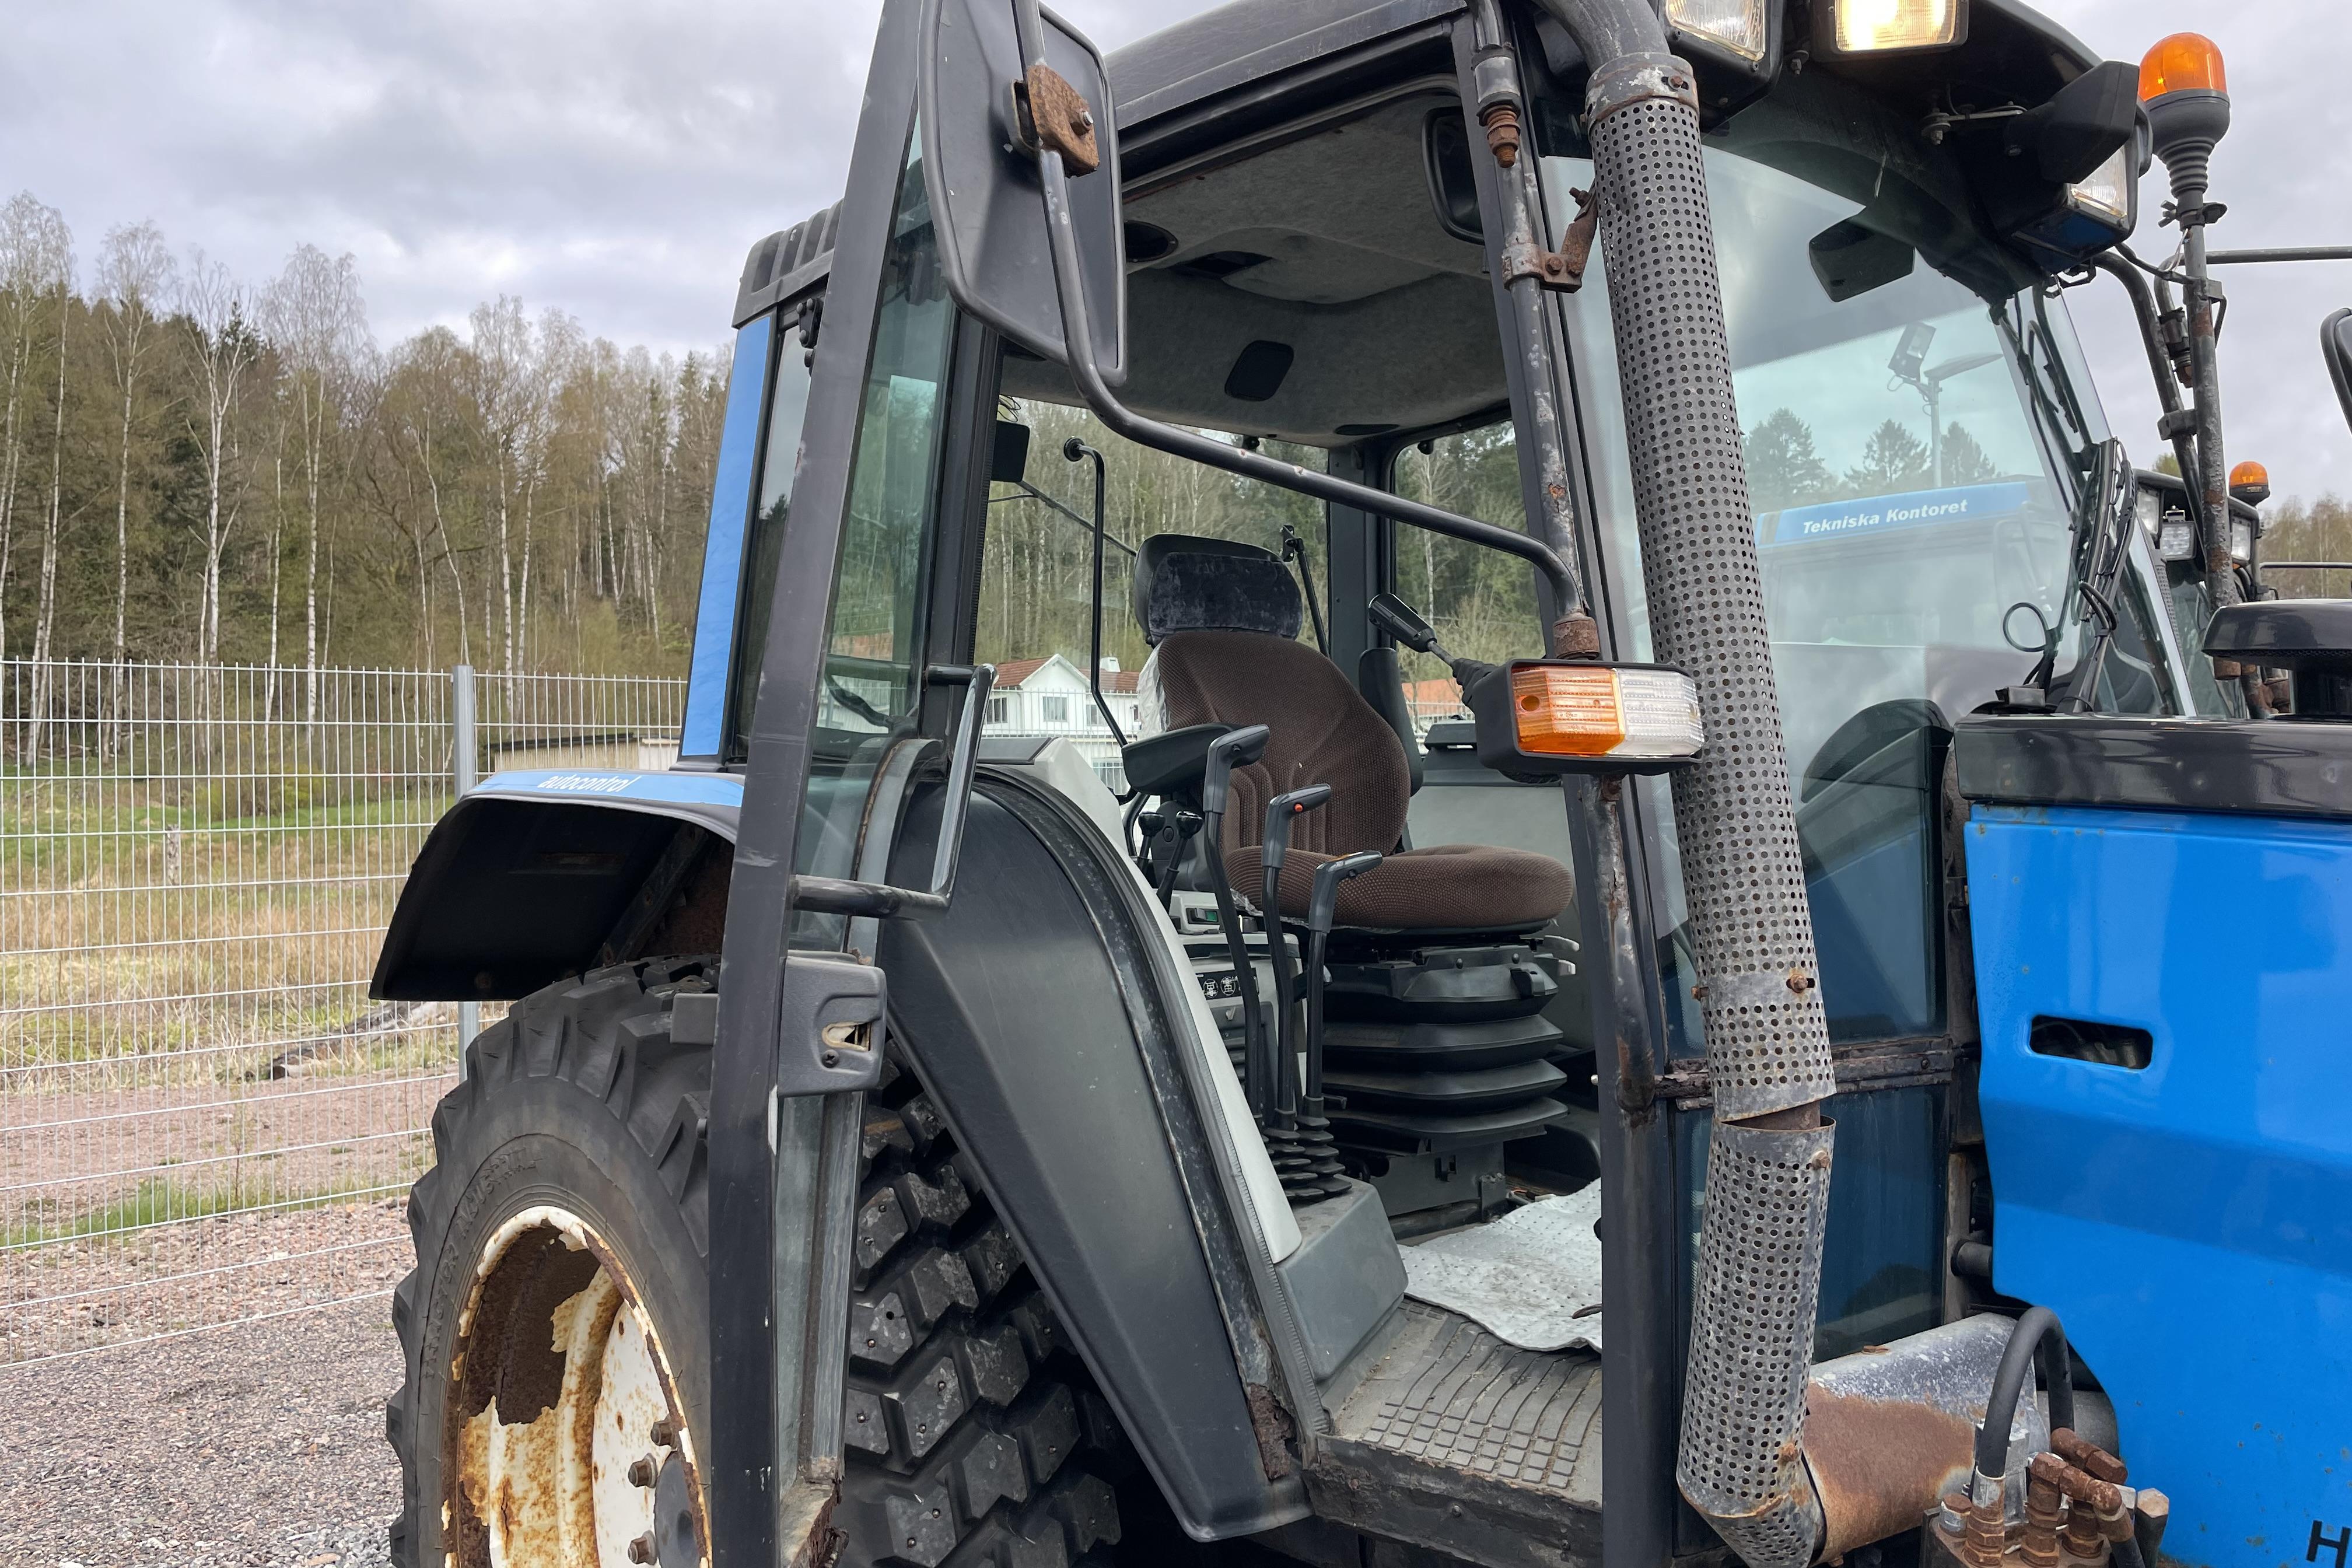 Valtra Valmet 6200-4 Traktor med vikplog -  - Manuell - blå - 1998